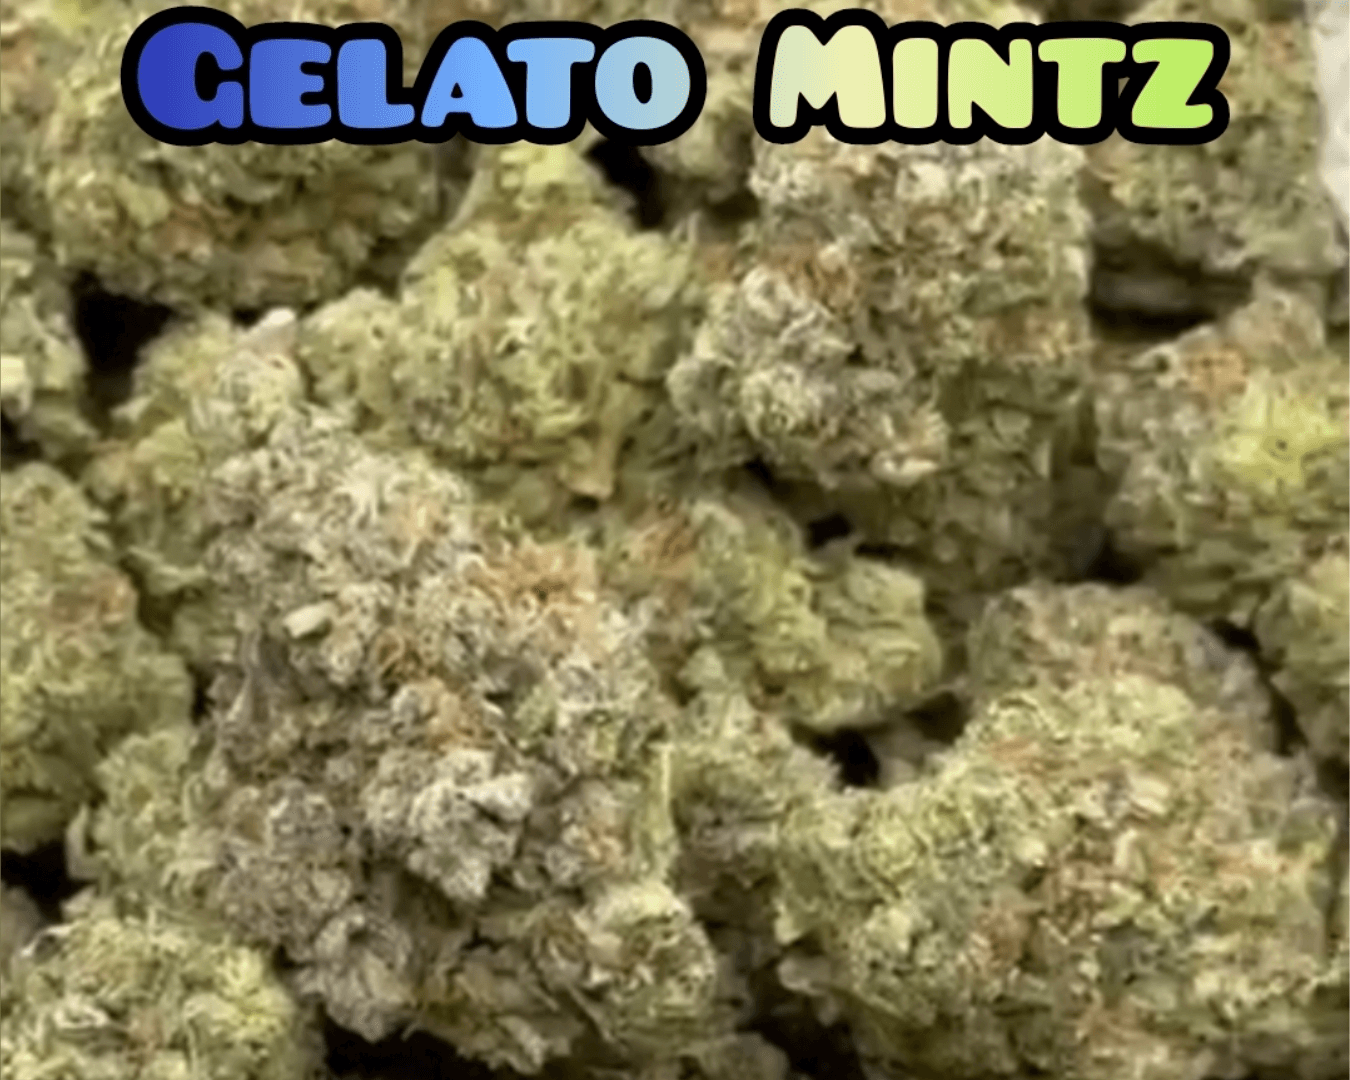 Gelato Mintz - Indica Dominant